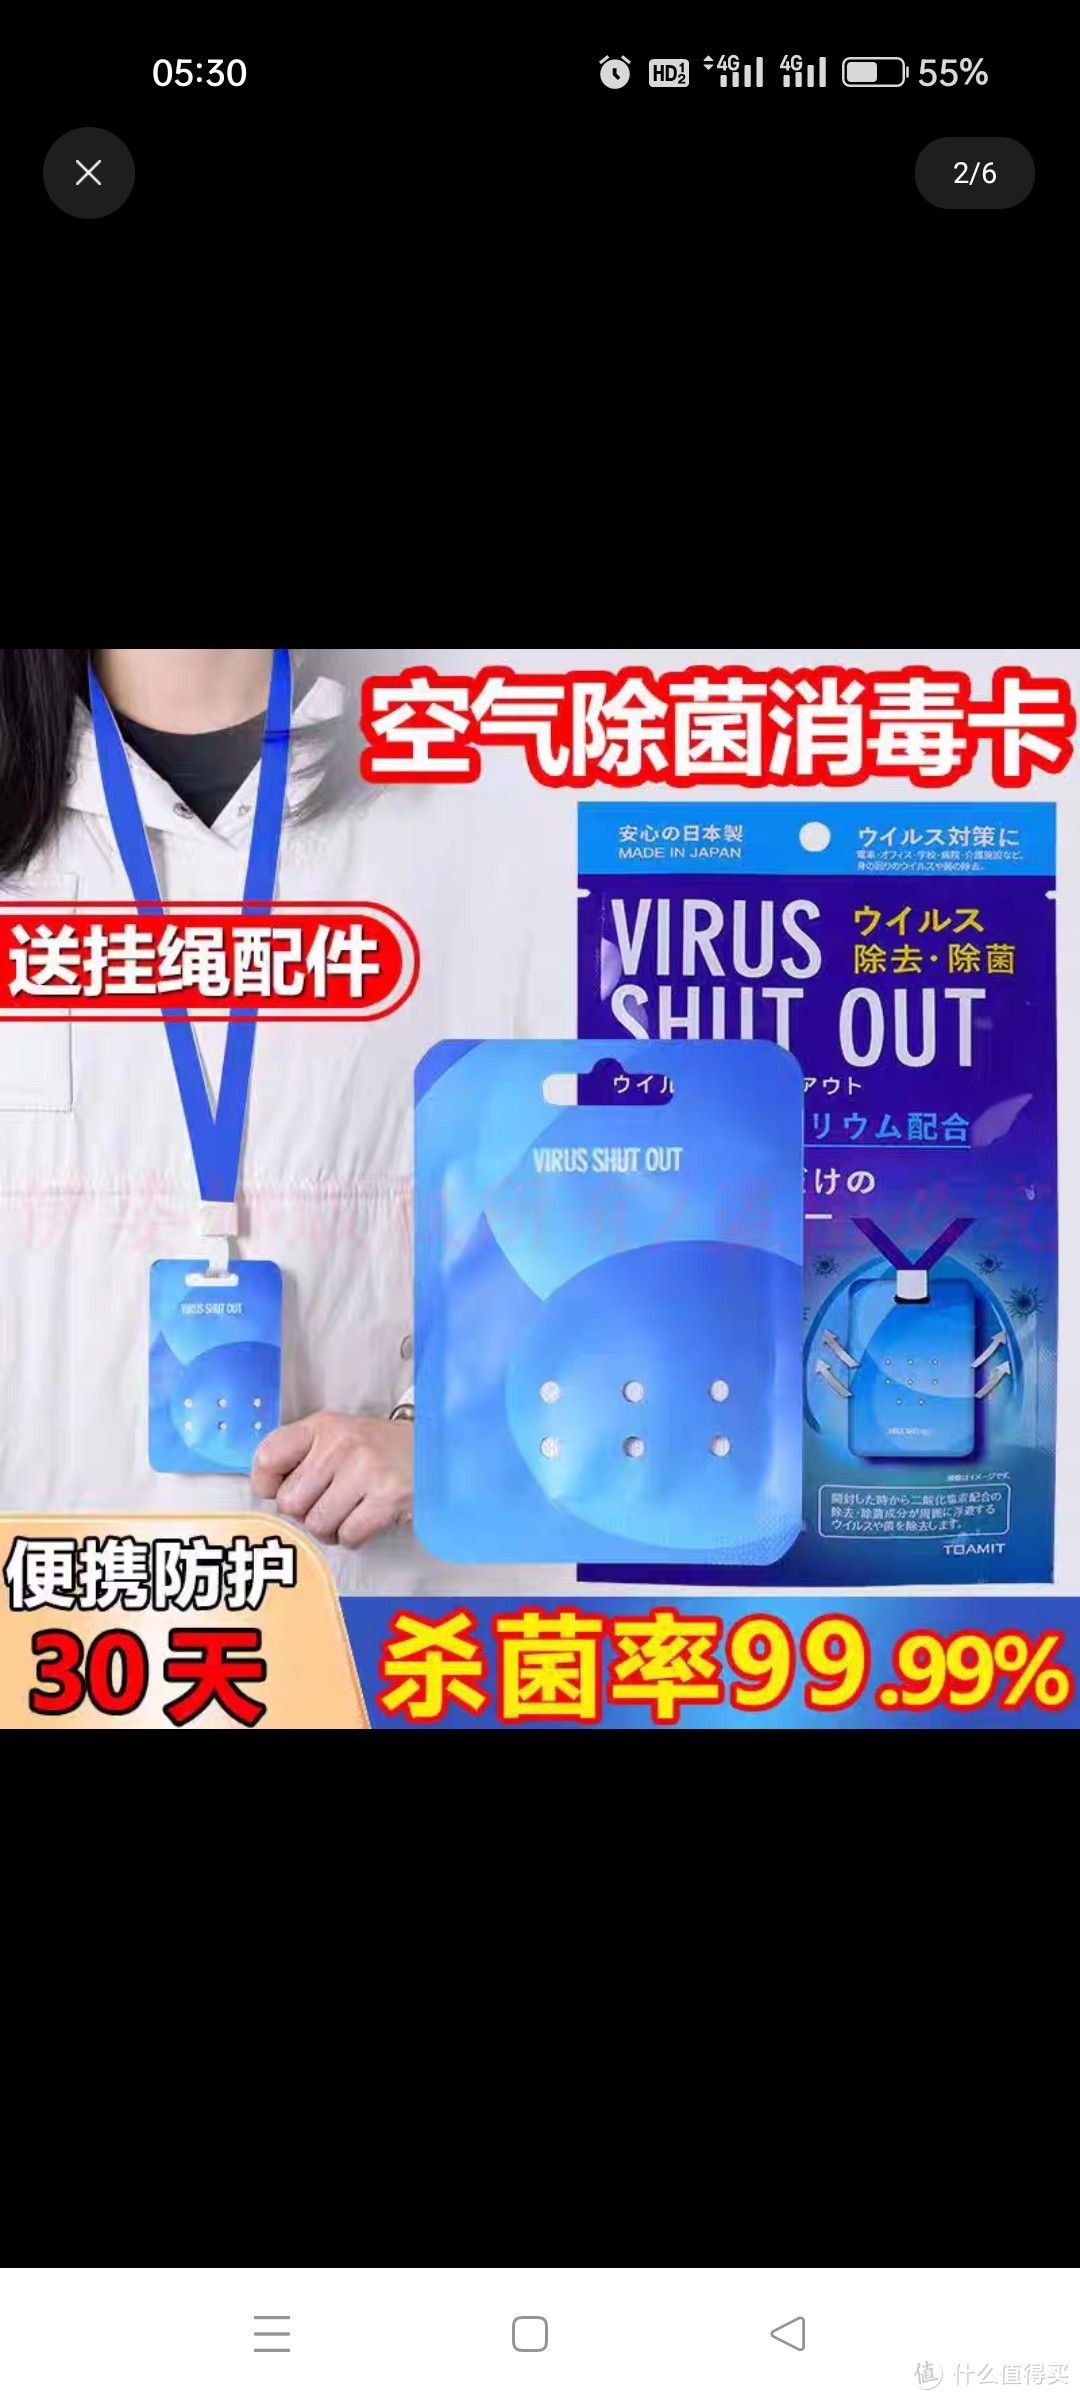 日本进口除菌卡防疫随身携带的消毒卡挂脖便携空气杀菌抑菌卡正品